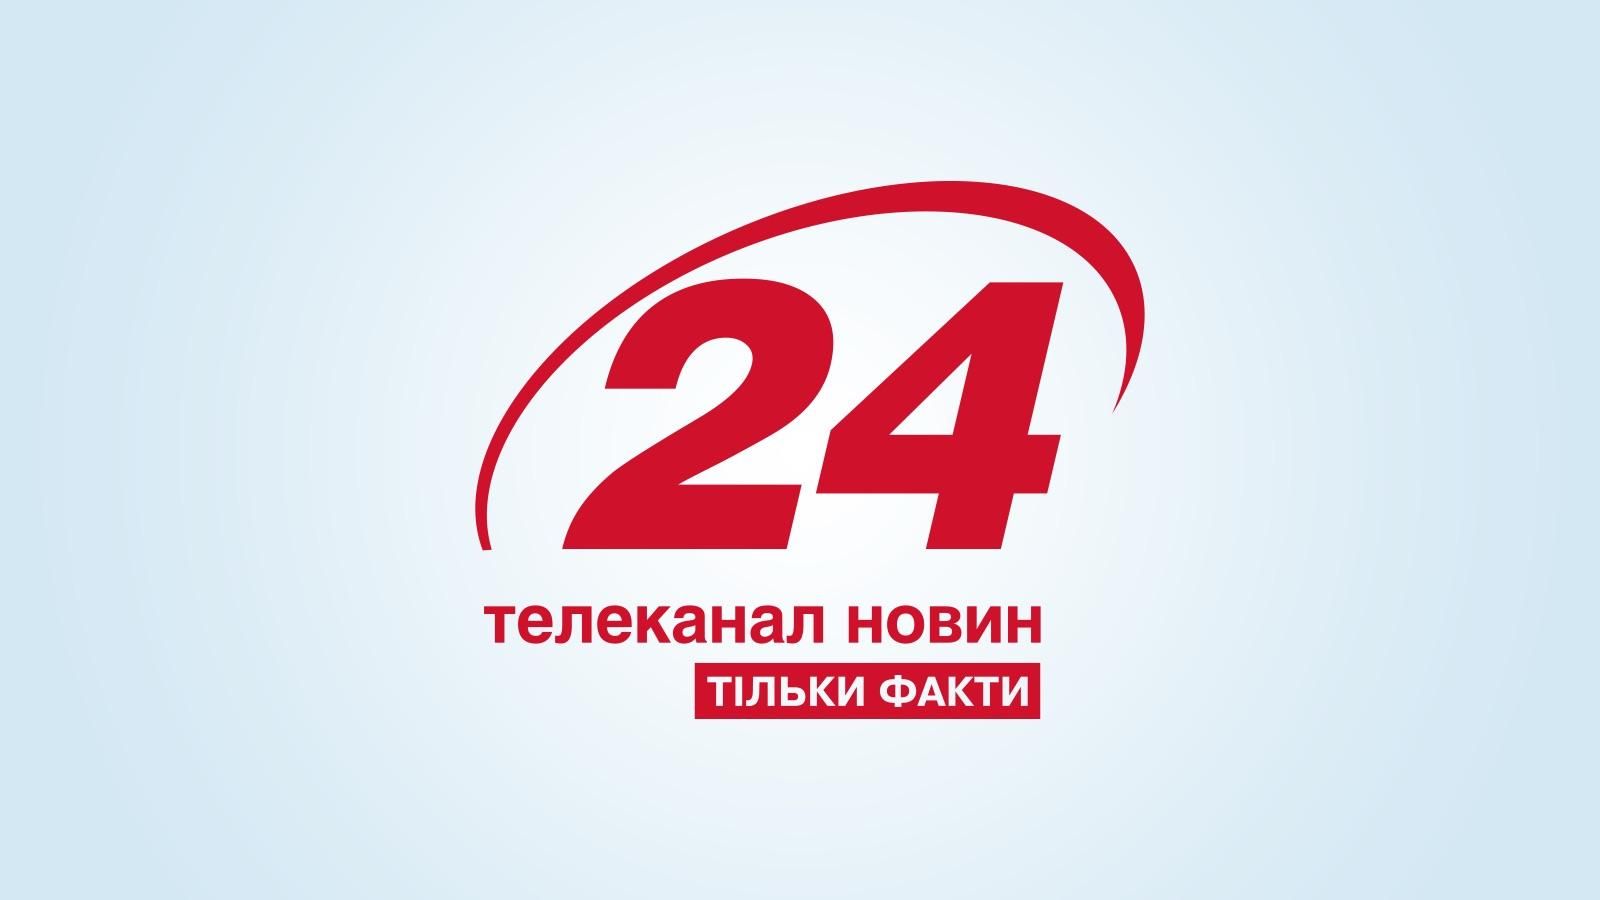 Телеканал "24" повернувся у Т2 у Львові